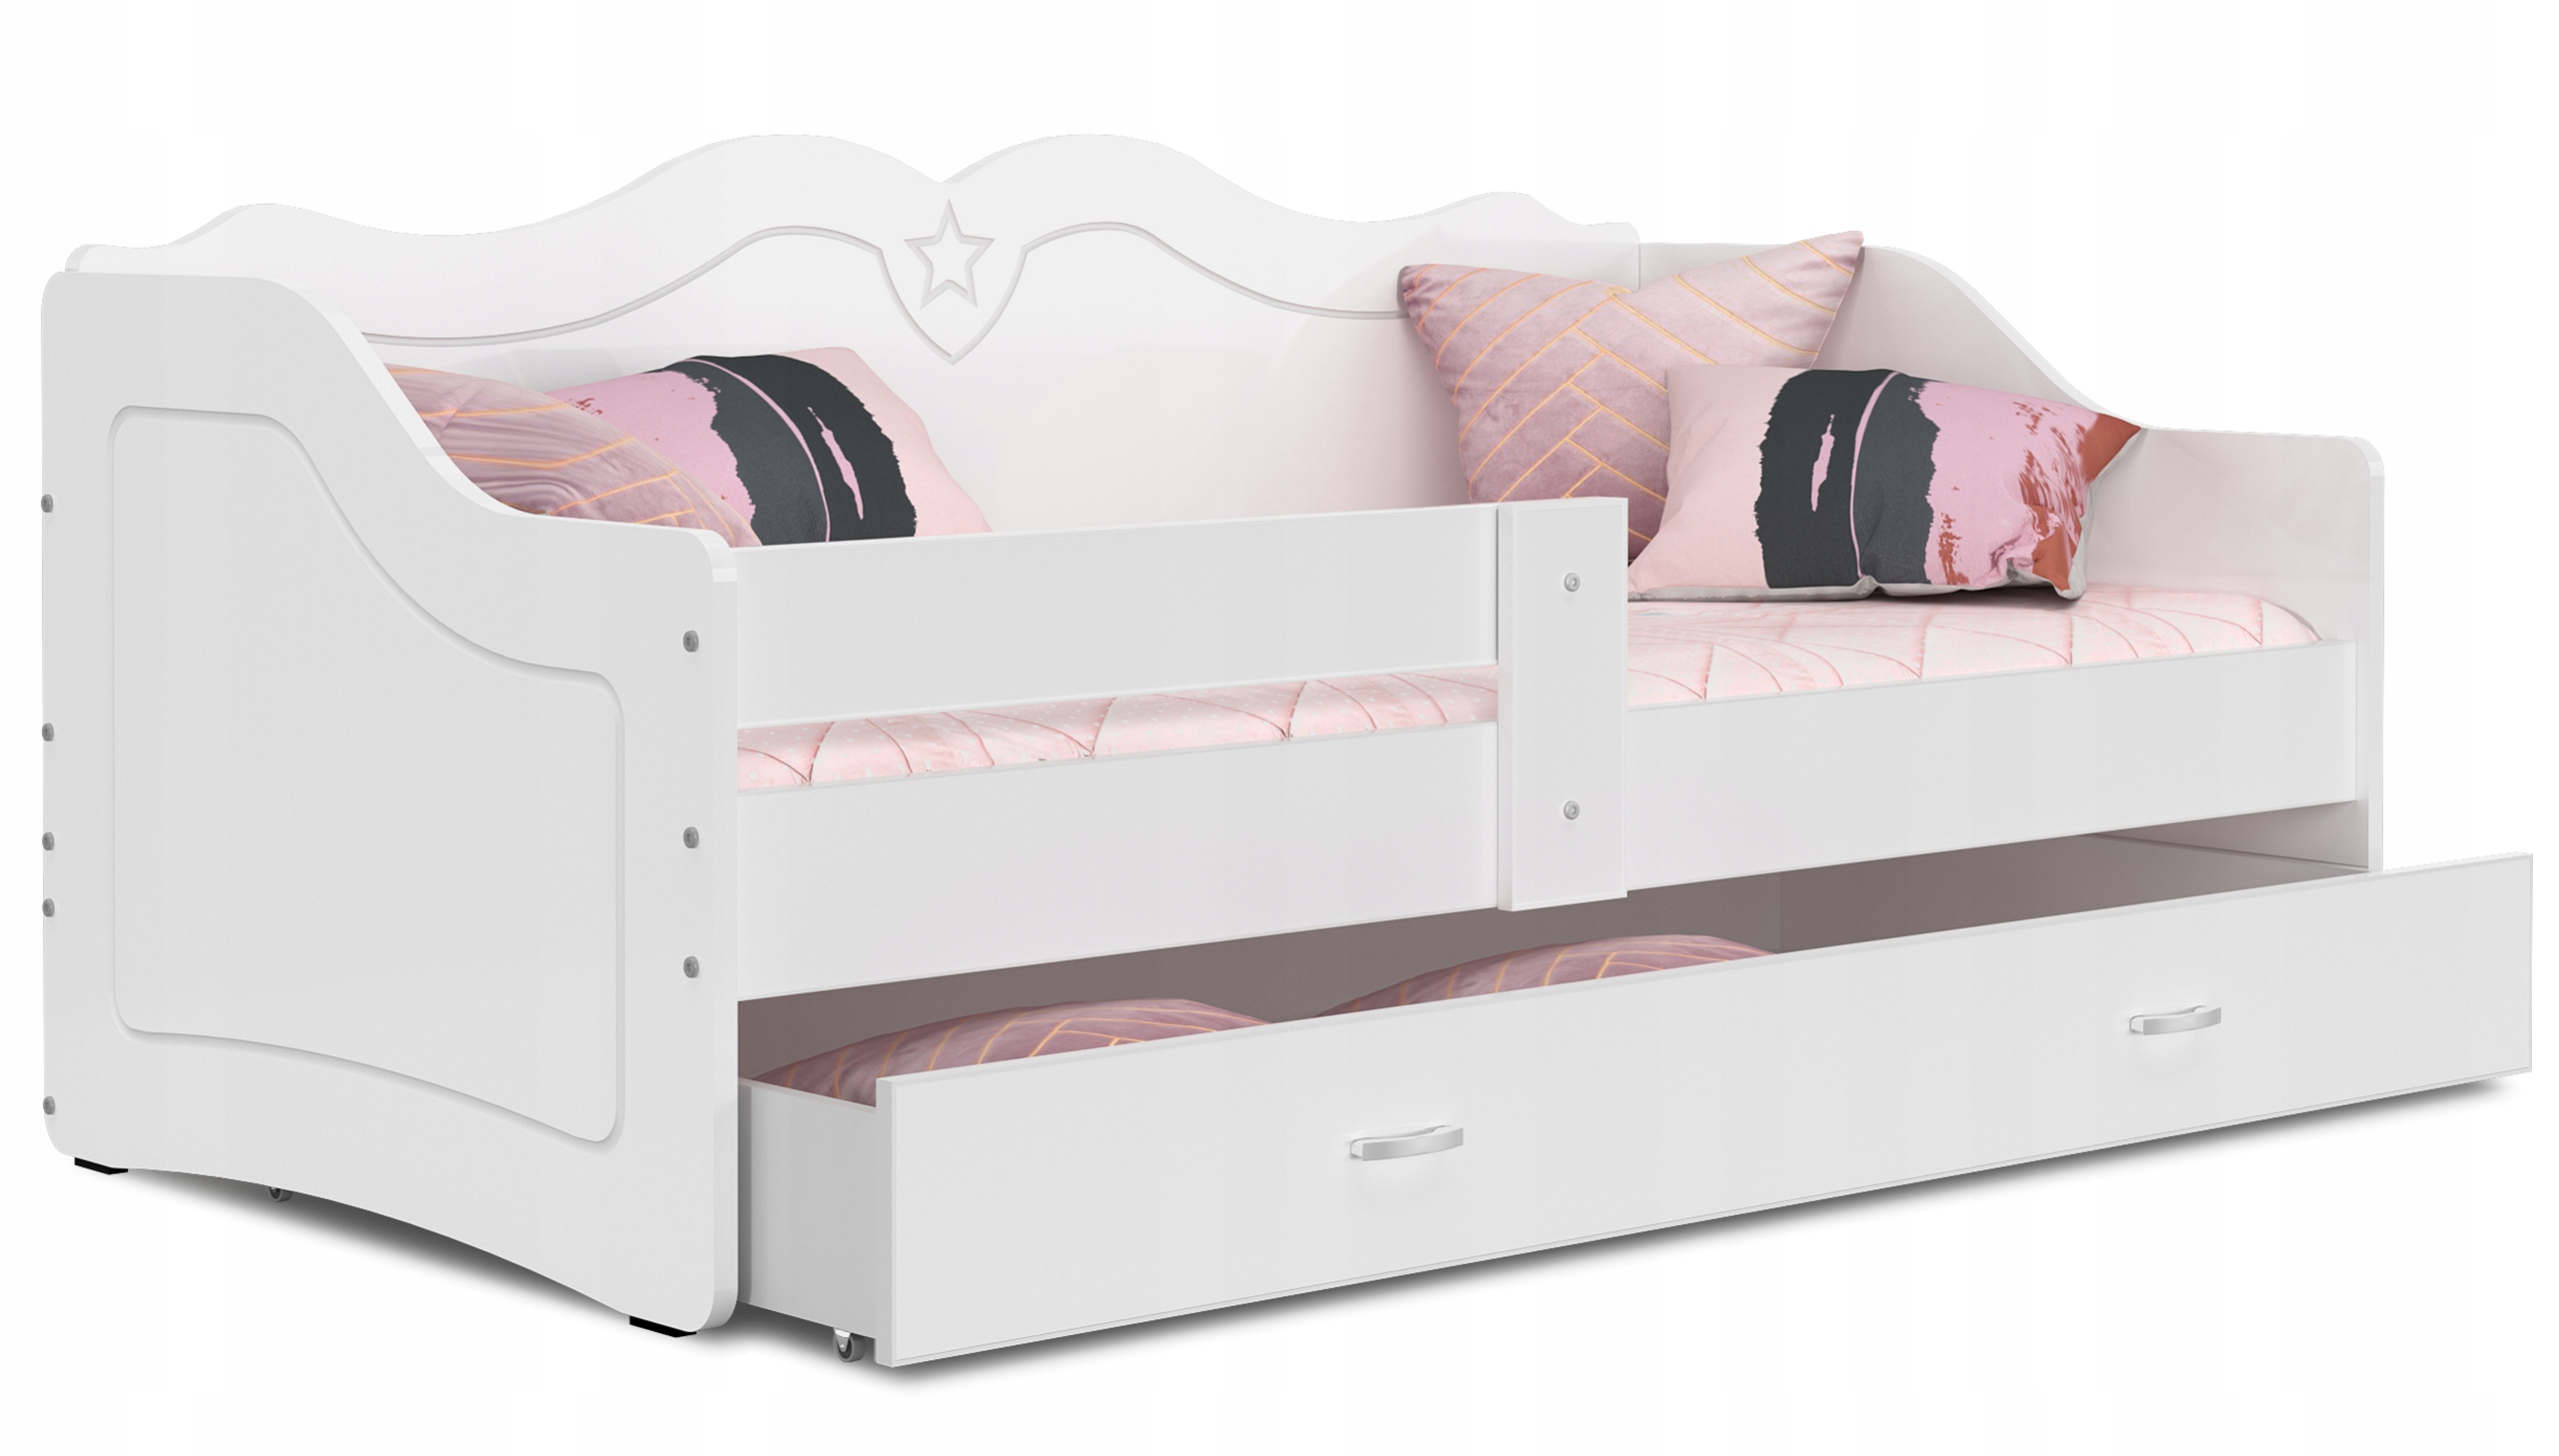 łóżko dziecięce LILI 160x80 biel + materac